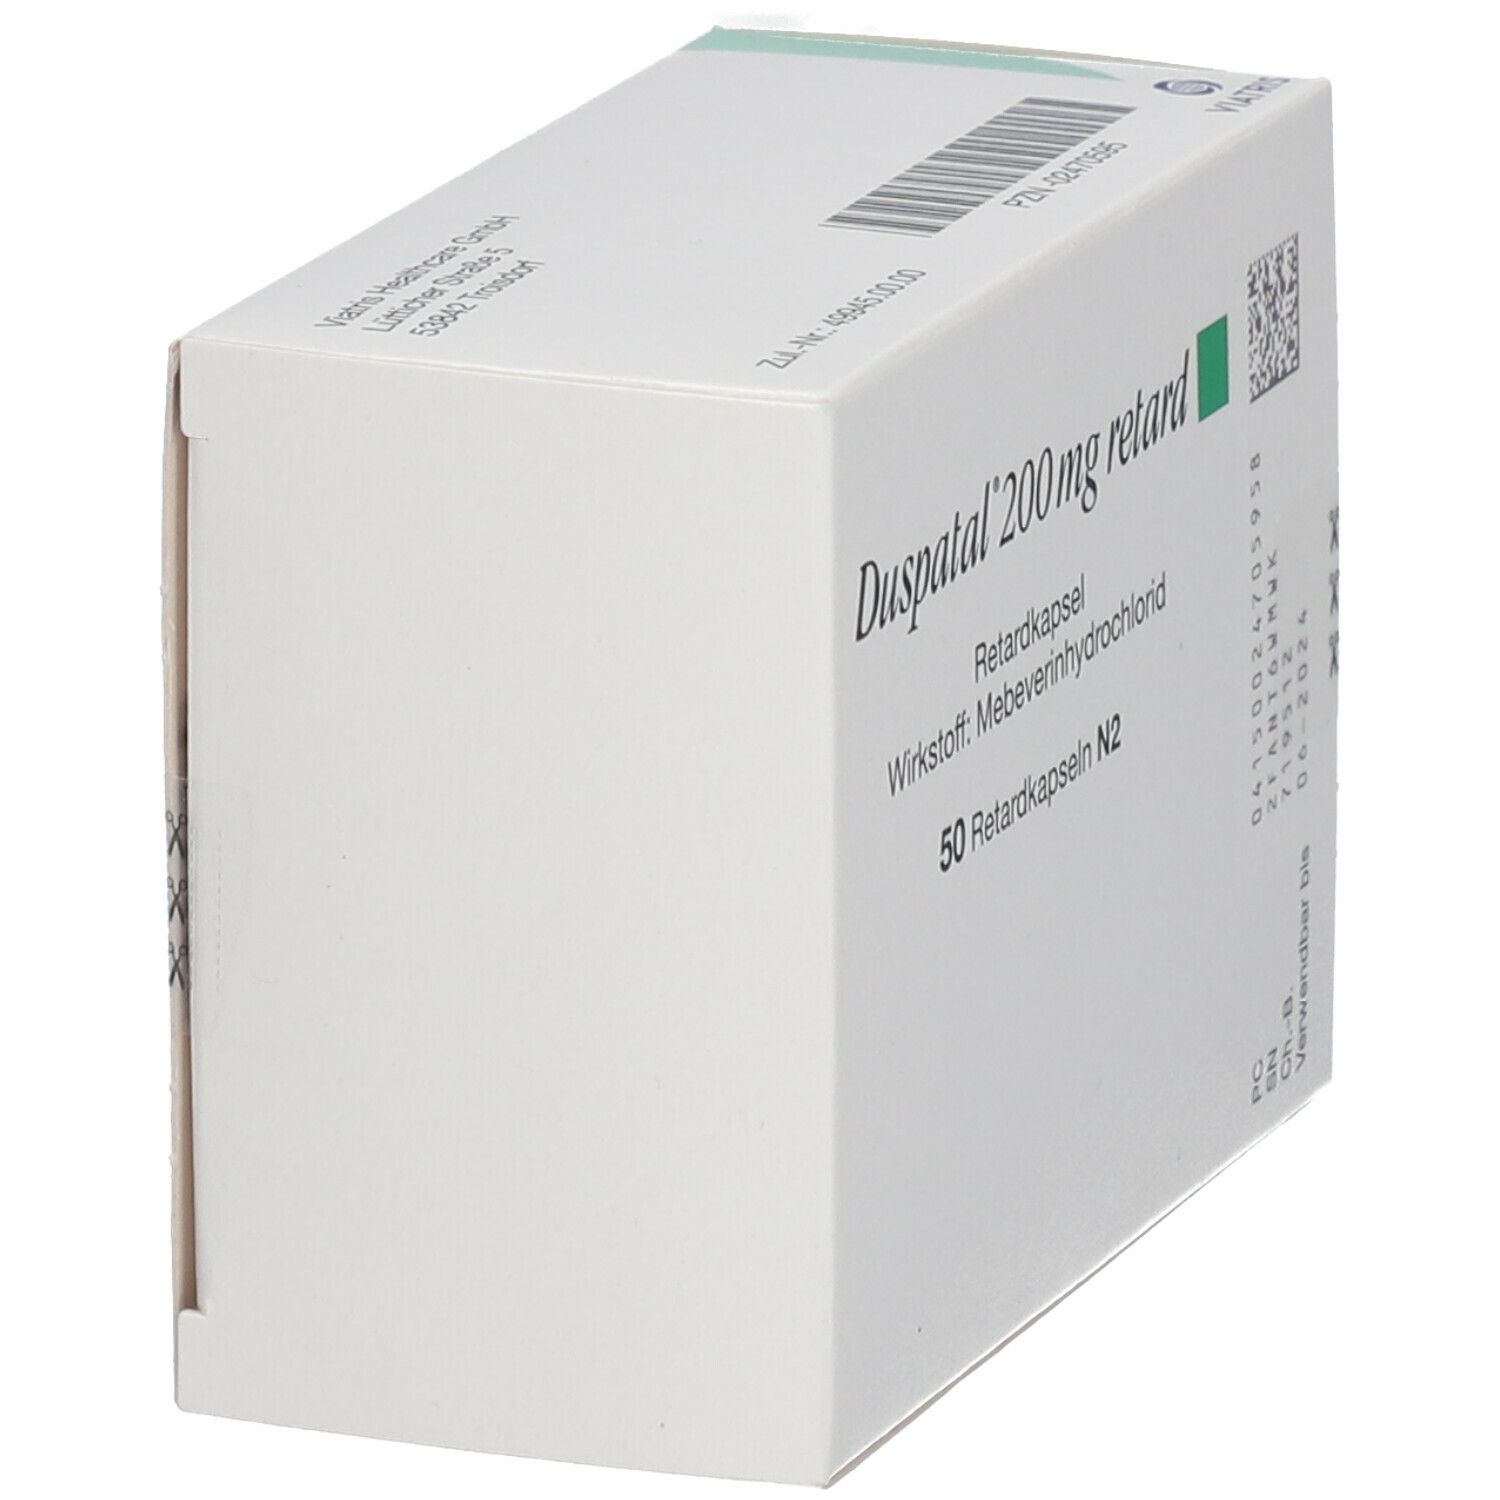 Duspatal® 200 mg retard